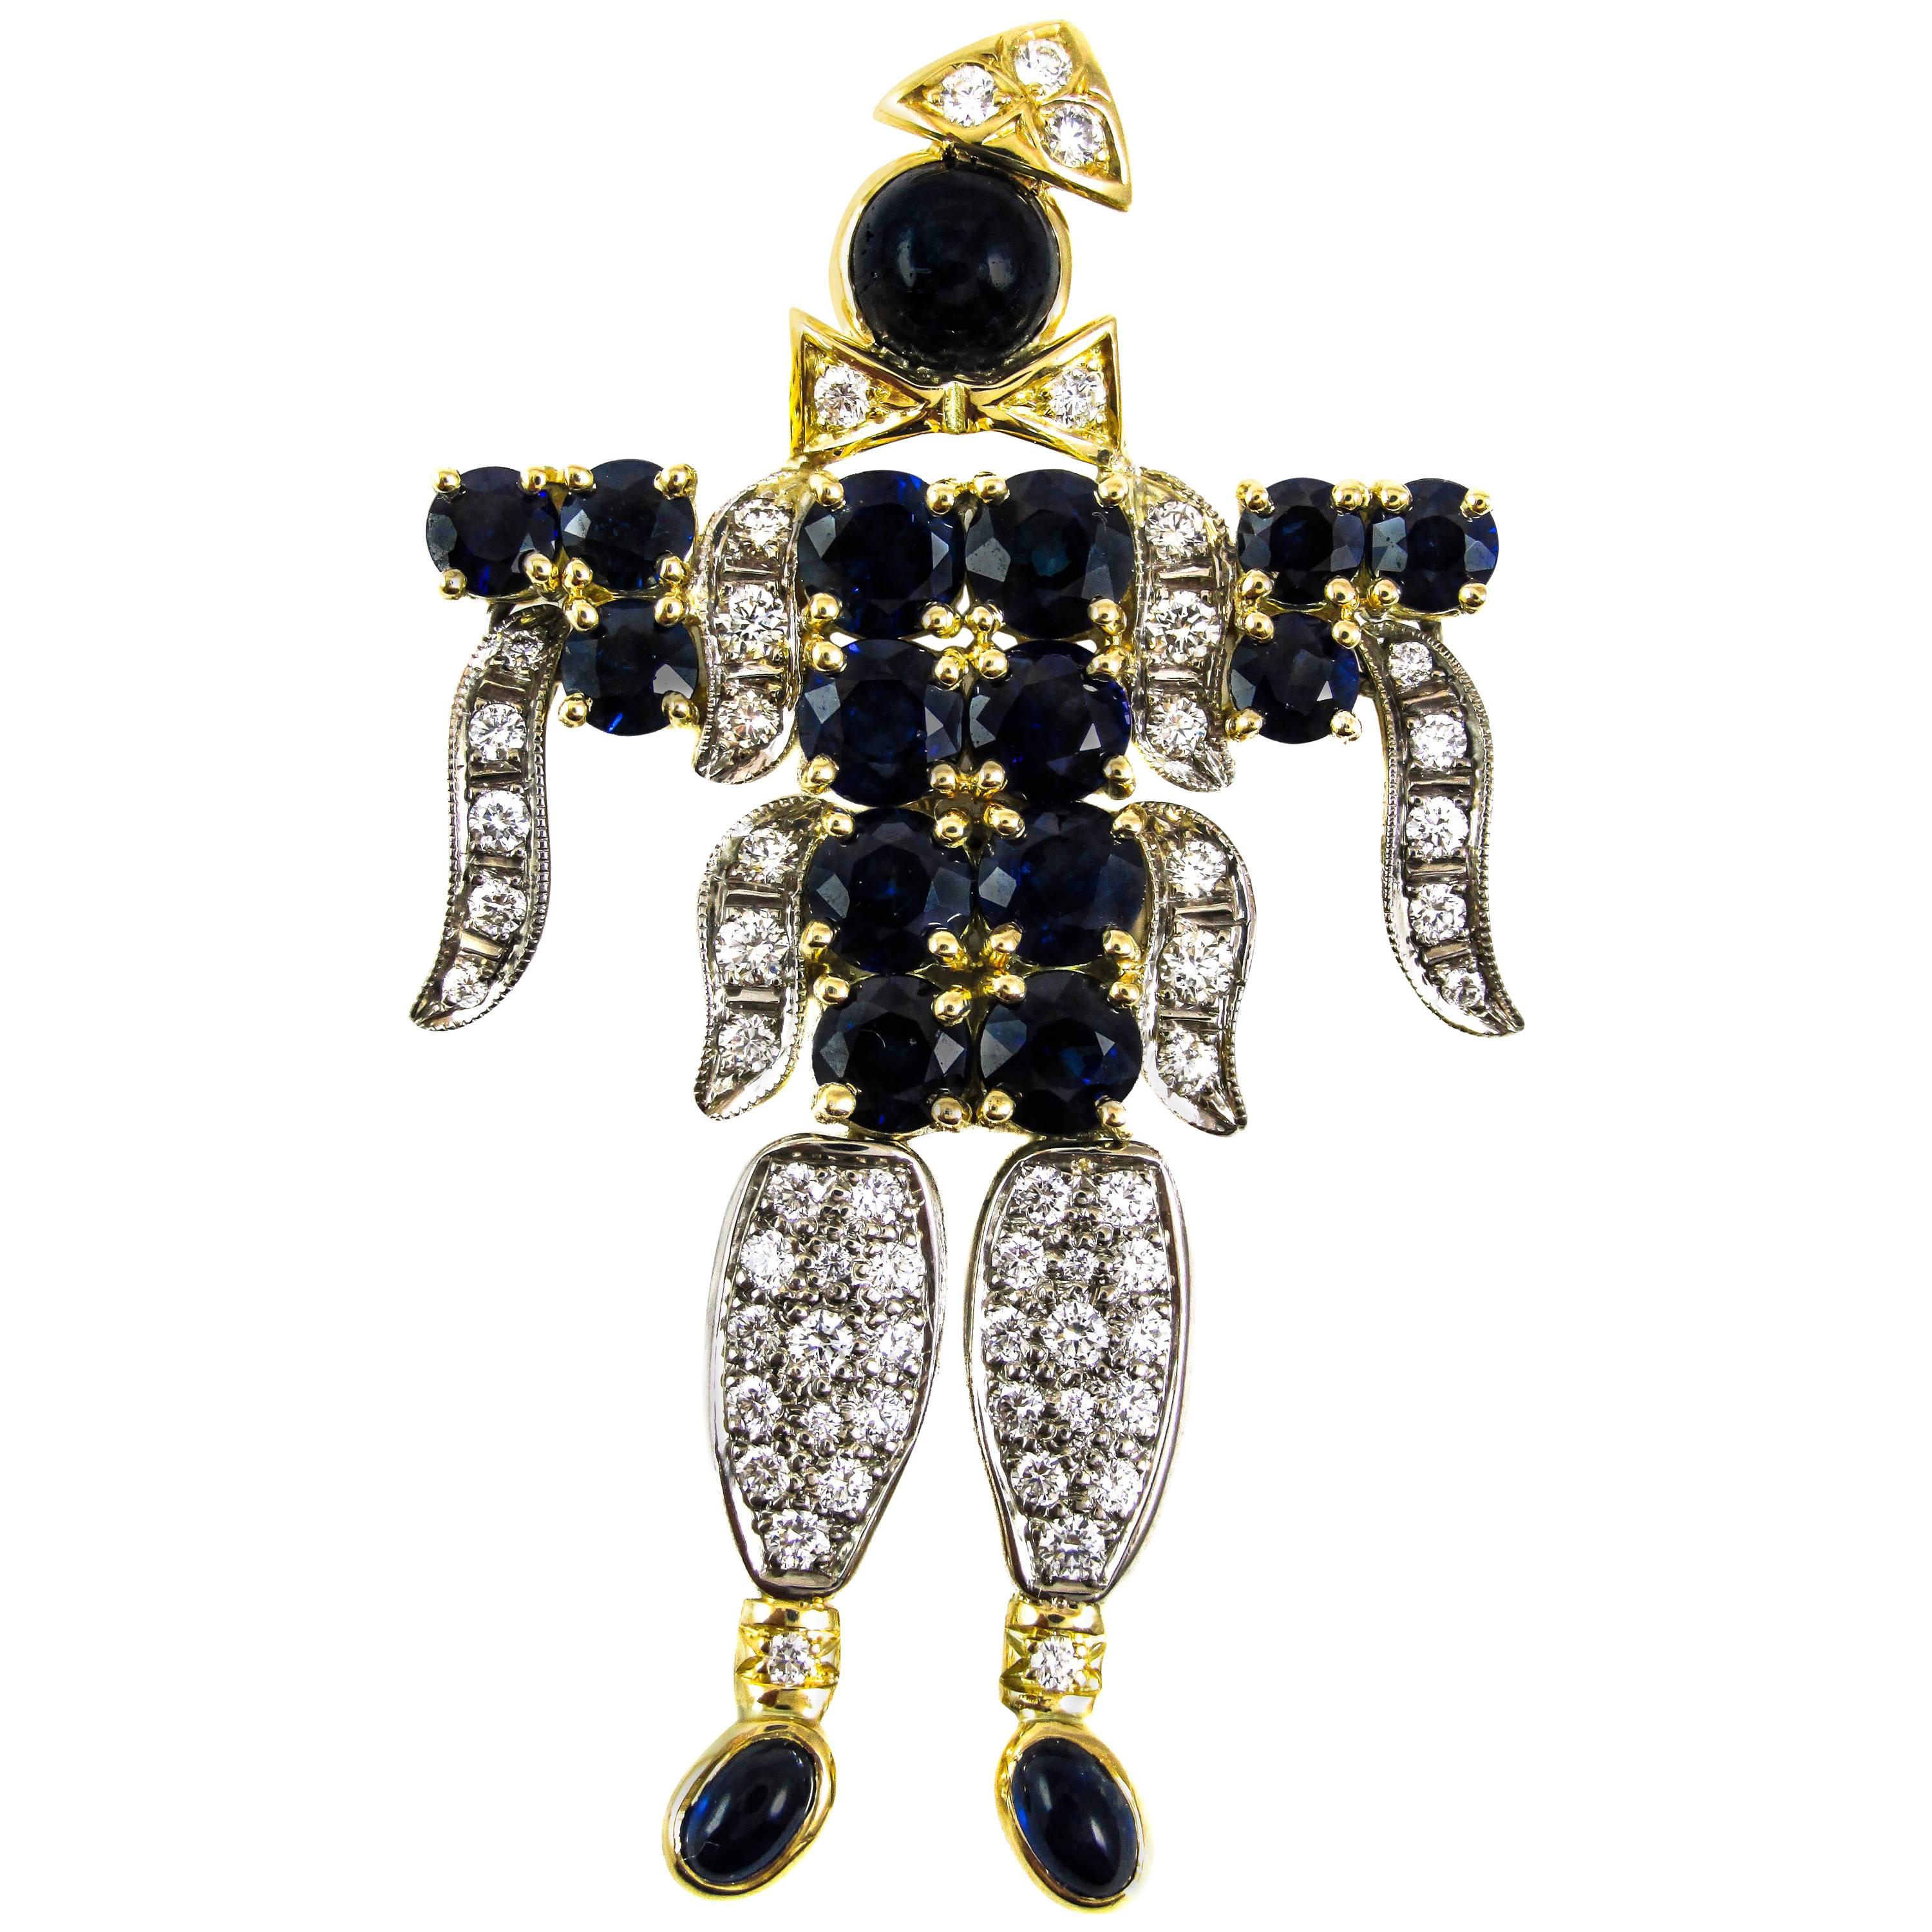 Neben seiner außergewöhnlichen Sammlung von antikem, nachgelassenem und feinem Schmuck bietet Rive Gauche Jewelry einzigartige, individuell gestaltete Kreationen, die Sie nur hier finden können. Diese von den besten Juwelieren handgefertigten Stücke